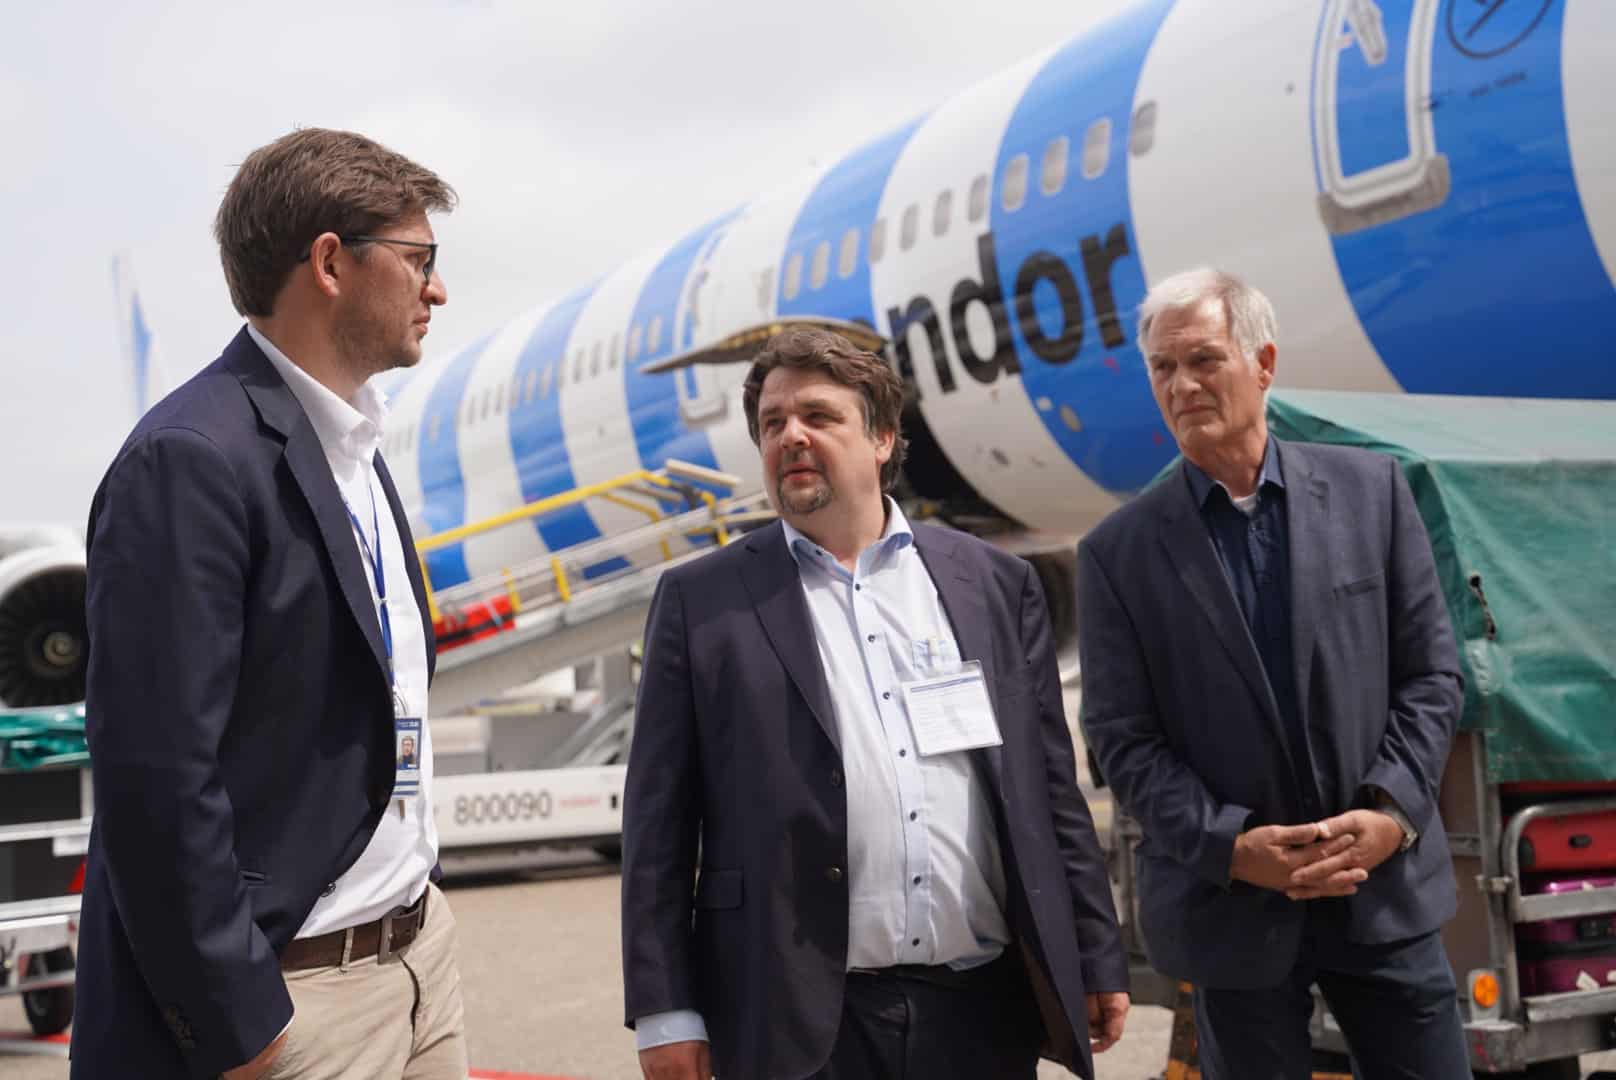 Dennis Radtke eurodeputado en conversación con representantes da dirección do aeroporto (de esquerda a dereita): Fabian Zachel (xefe de Asuntos Públicos), Dennis Radtke eurodeputado (CDU), Peter Nengelten (oficina veciñal do aeroporto).